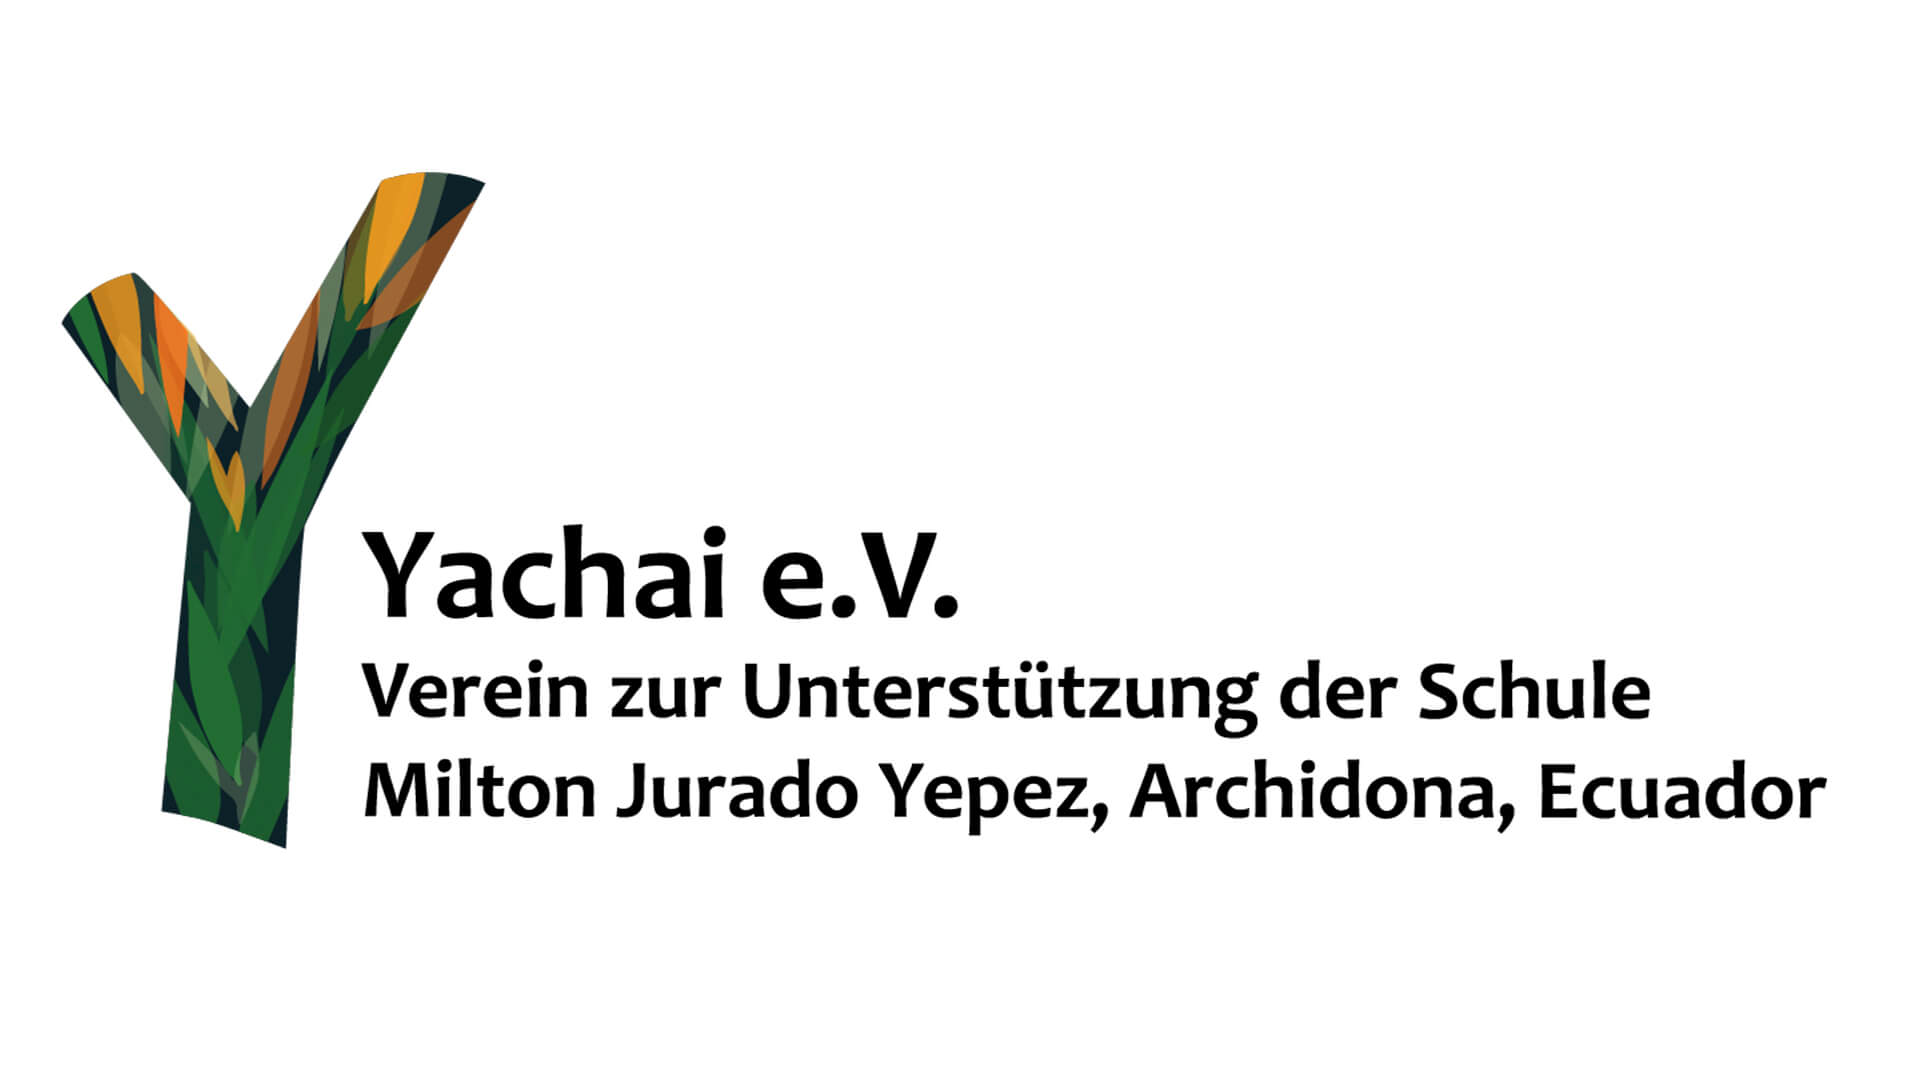 Nicola-Vock–Yachai-e.V.-Verein-zur-Unterstützung-der-Schule-Milton-Jurado-Yepez-Archidona-Ecuador